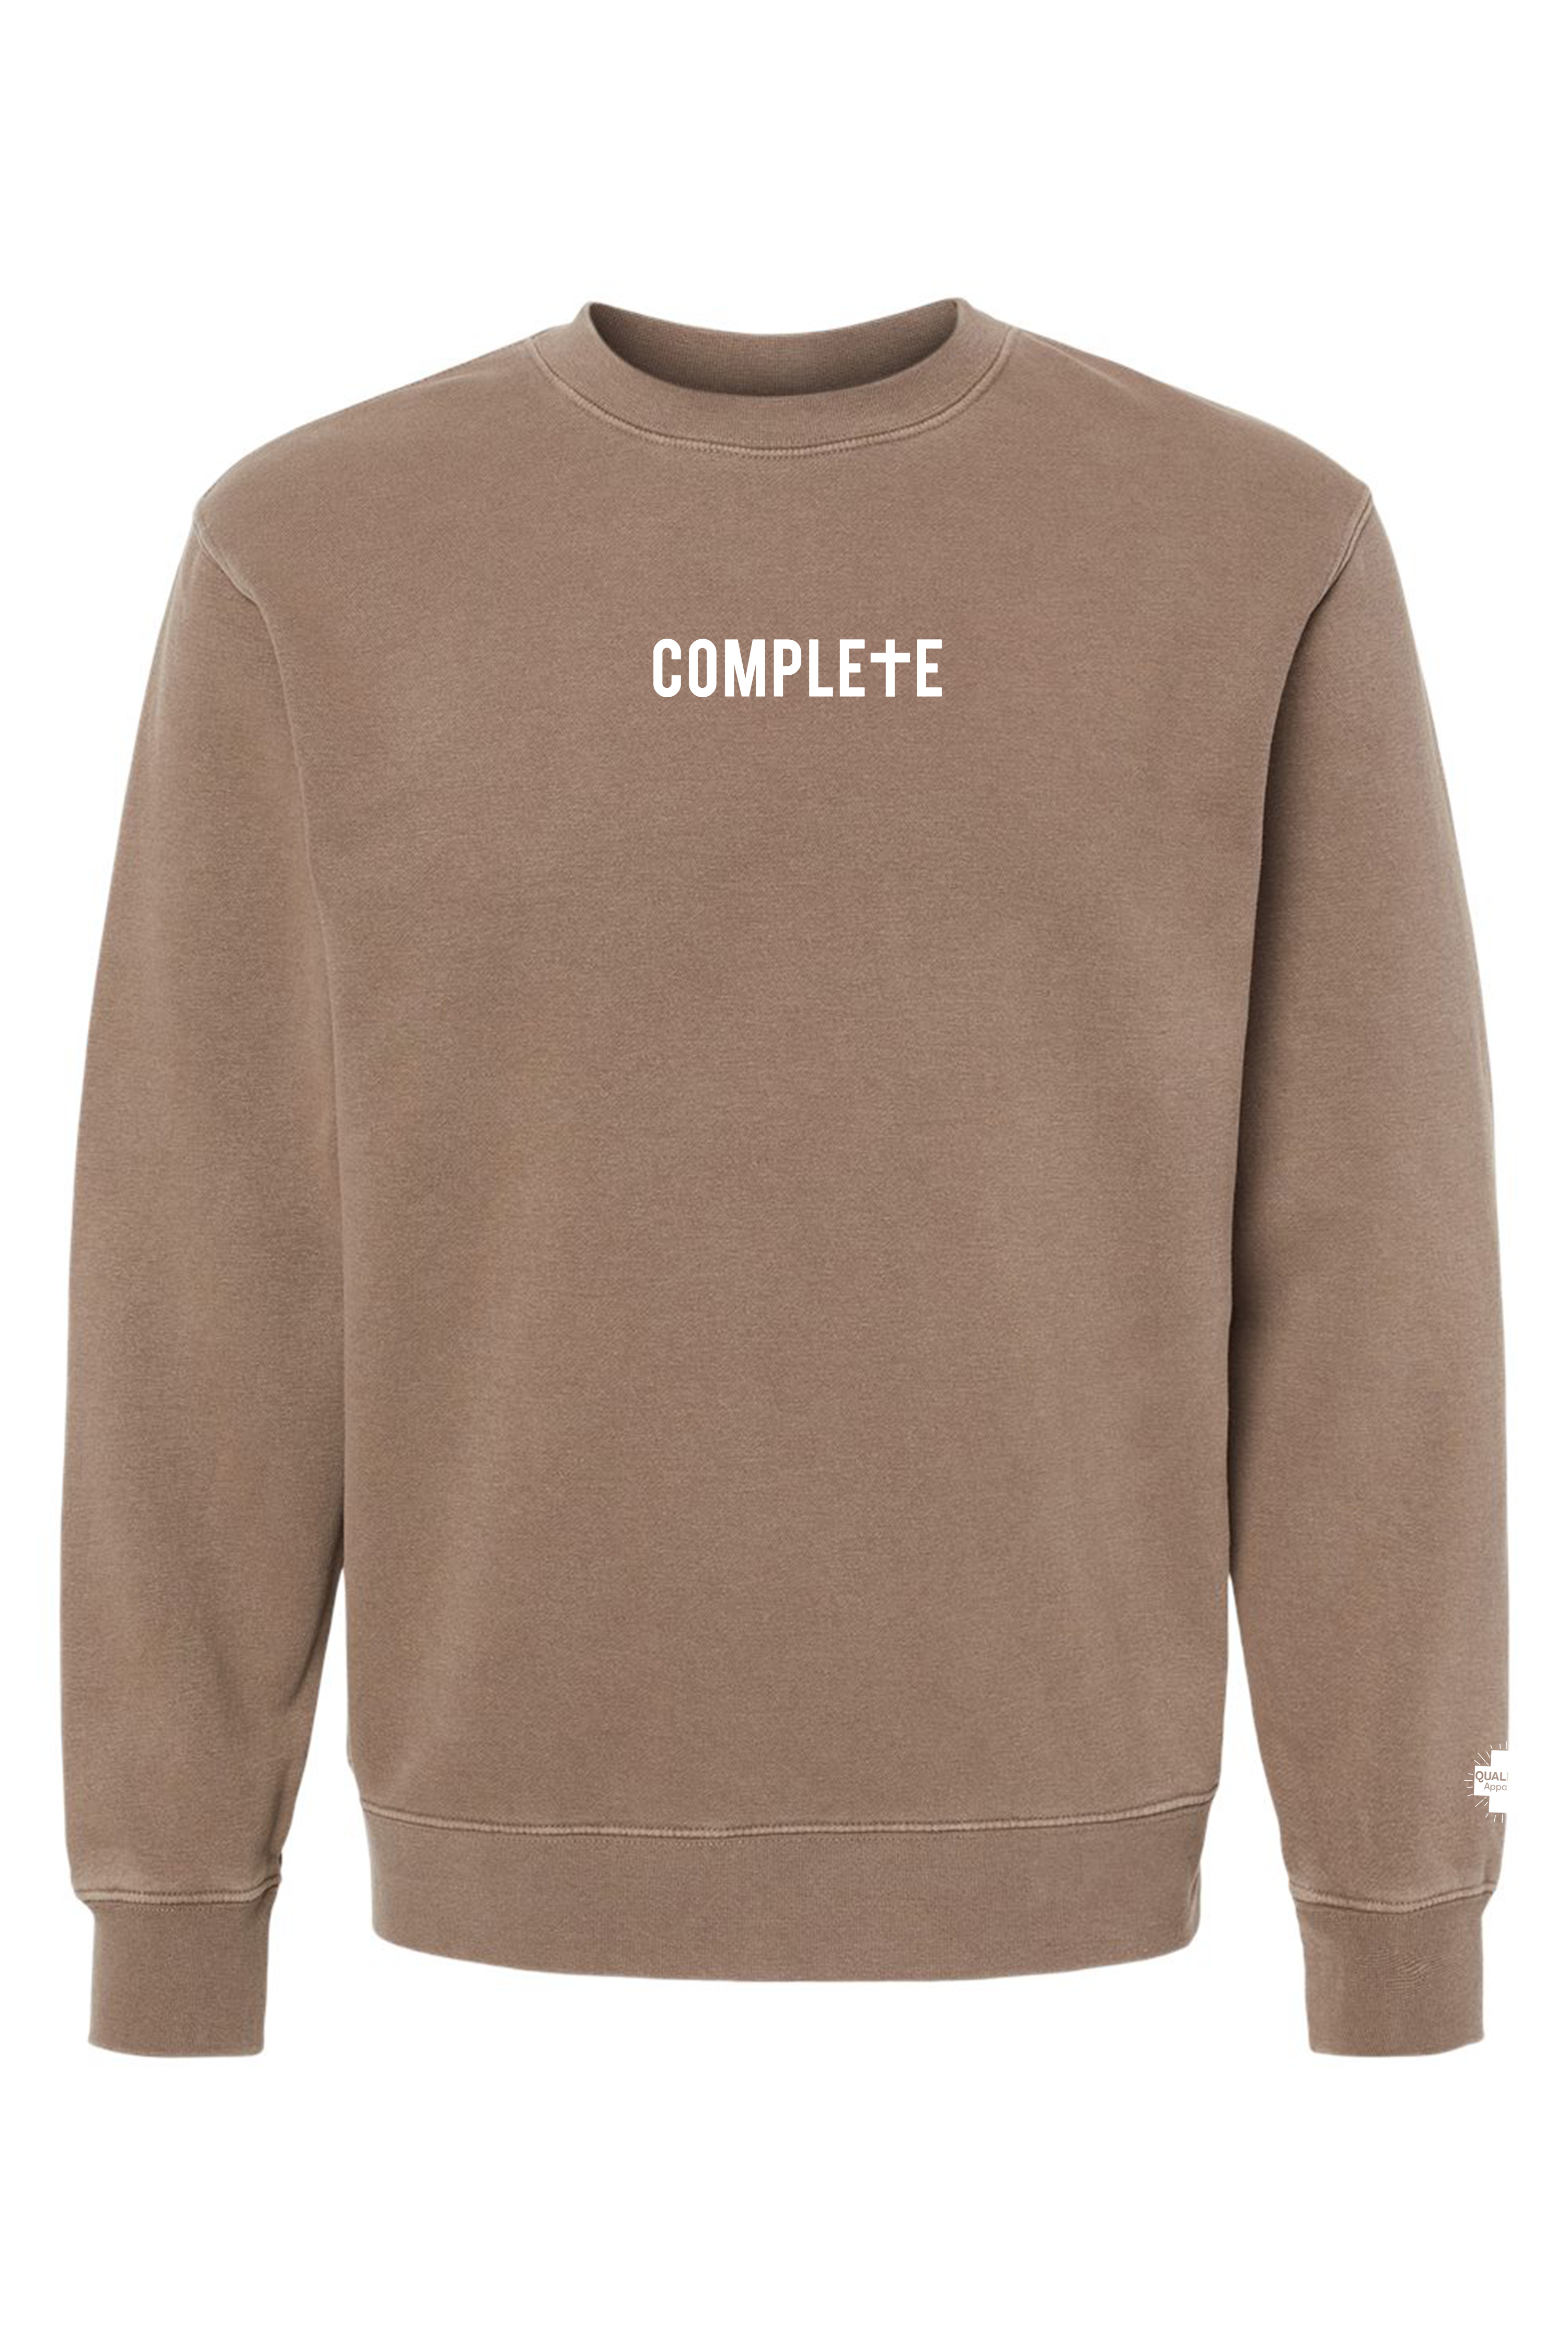 Complete Sweatshirt